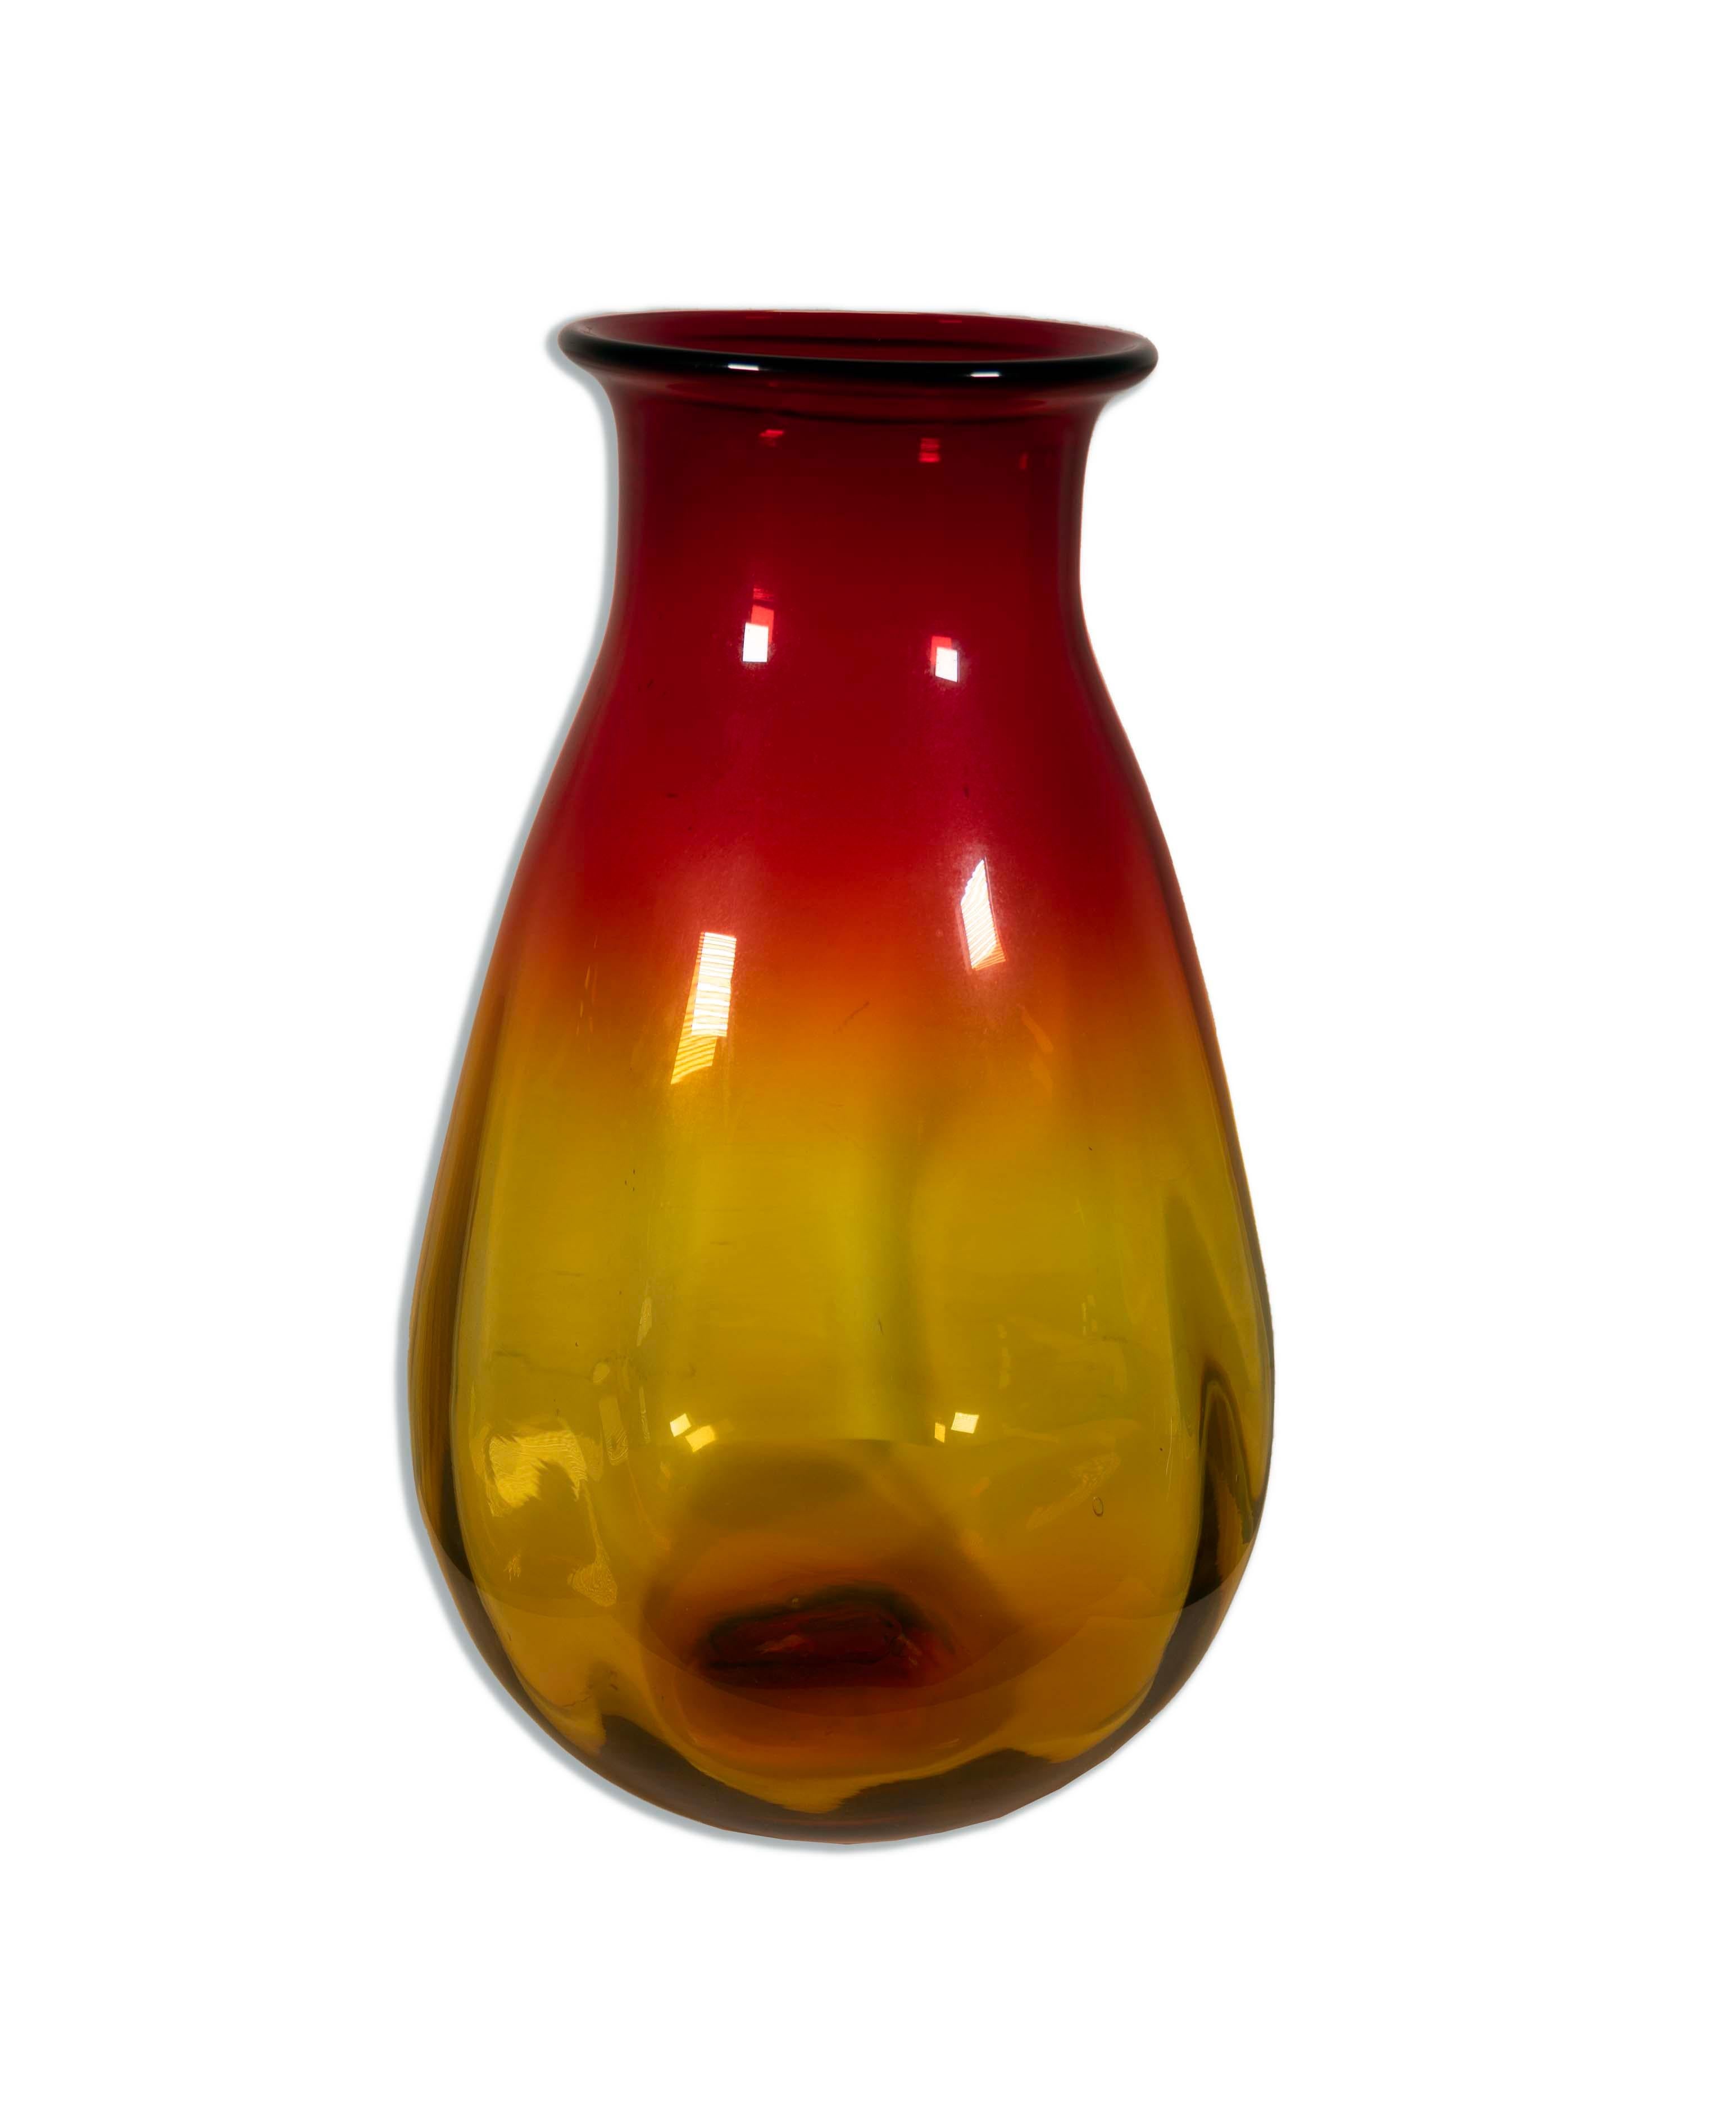 Le vase en verre rouge et jaune Joel Myers pour Blenko, modèle 7029, est une pièce remarquable de l'art verrier moderne du milieu du siècle. Fabriqué par Joel Myers et la célèbre société de verre Blenko, ce vase présente une forme curviligne